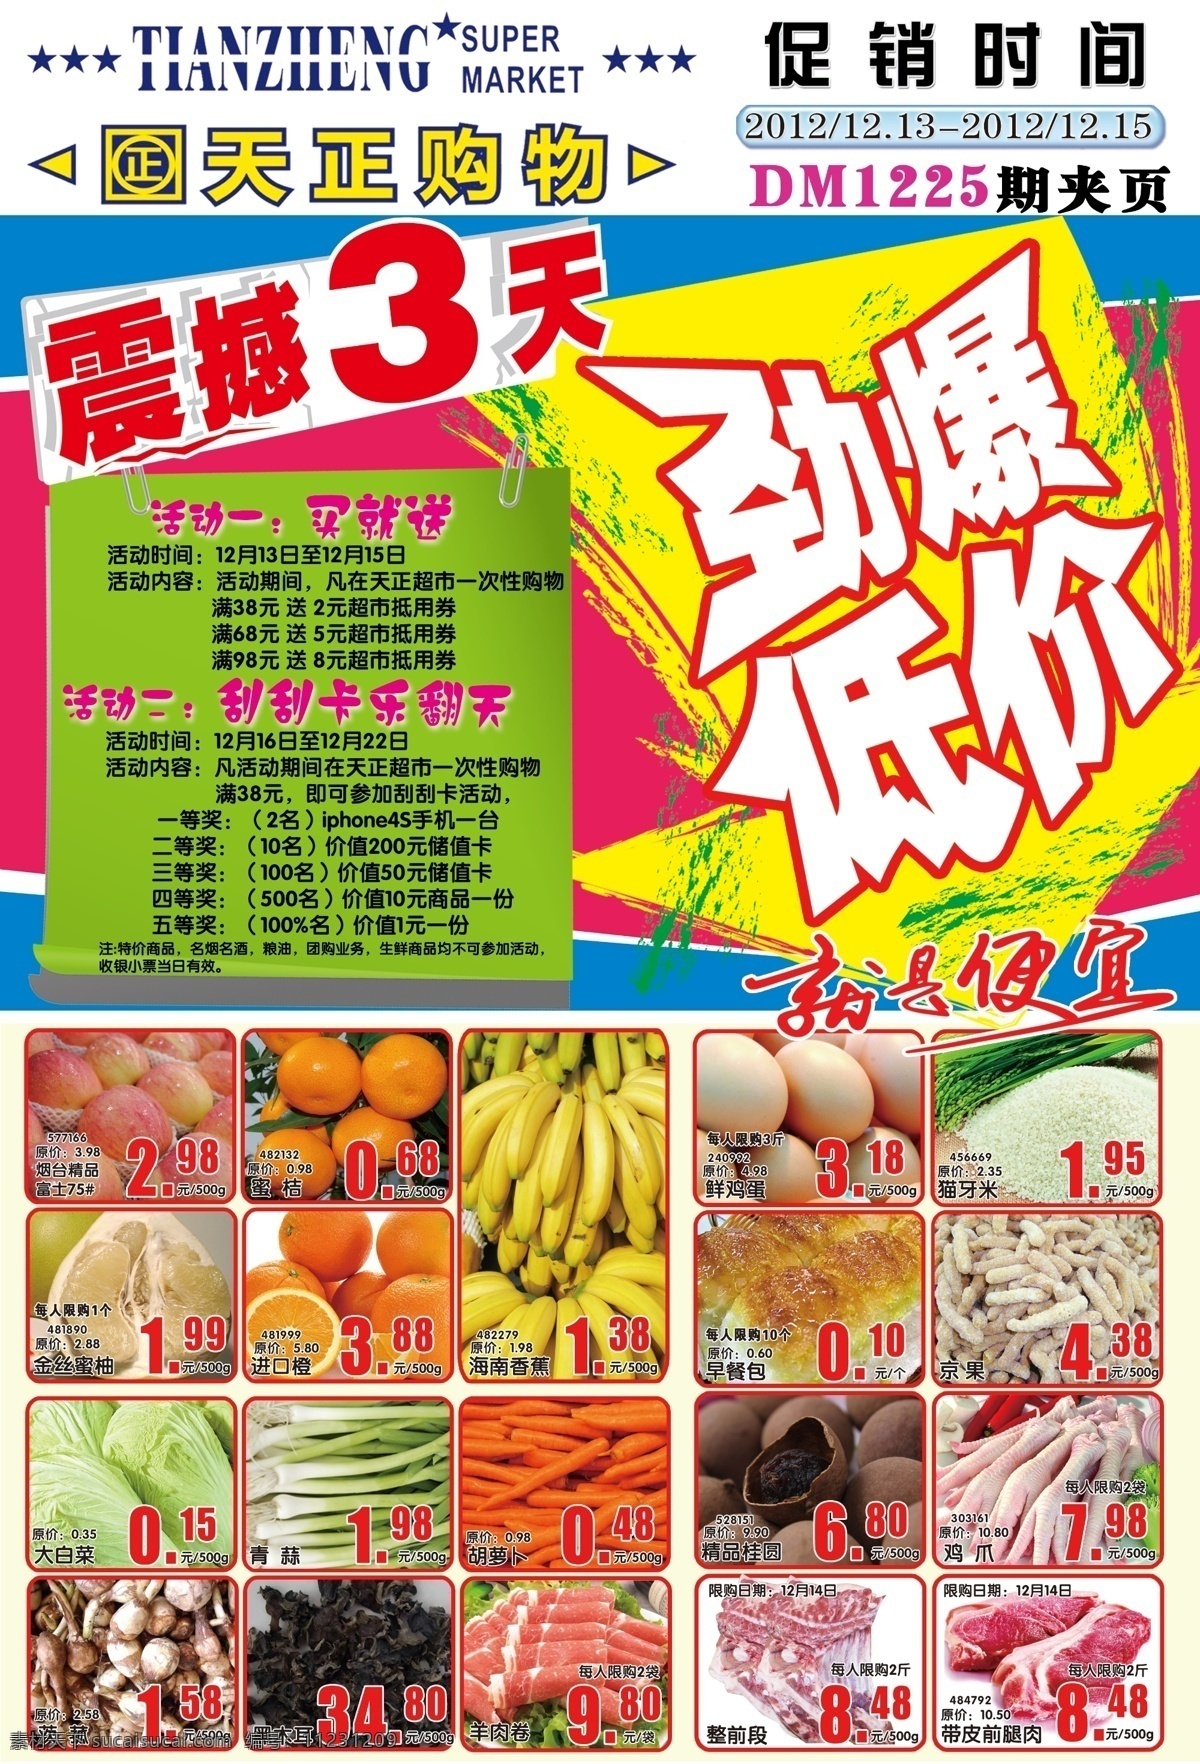 劲爆低价dm 劲爆 低价 超市 海报 dm 广告 宣传 生鲜 震撼 天正 香蕉 苹果 肉品 蔬菜 价格 pop 广告设计模板 源文件